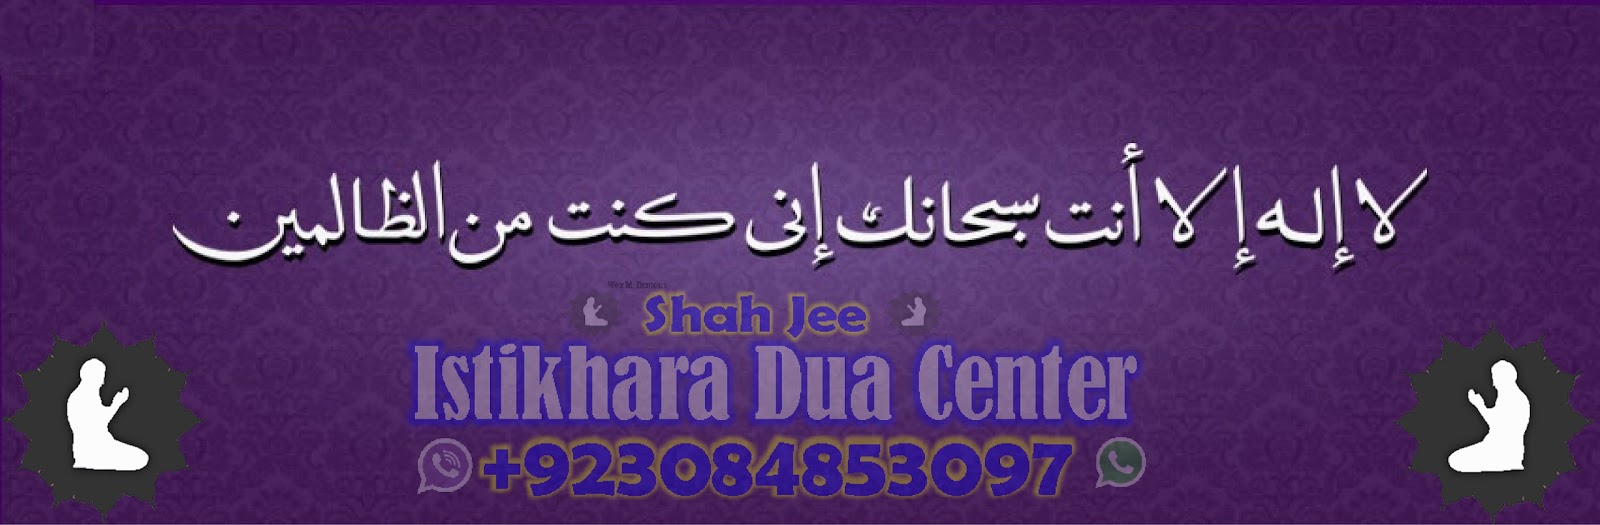 Online istikhara Dua Center +923084853097 